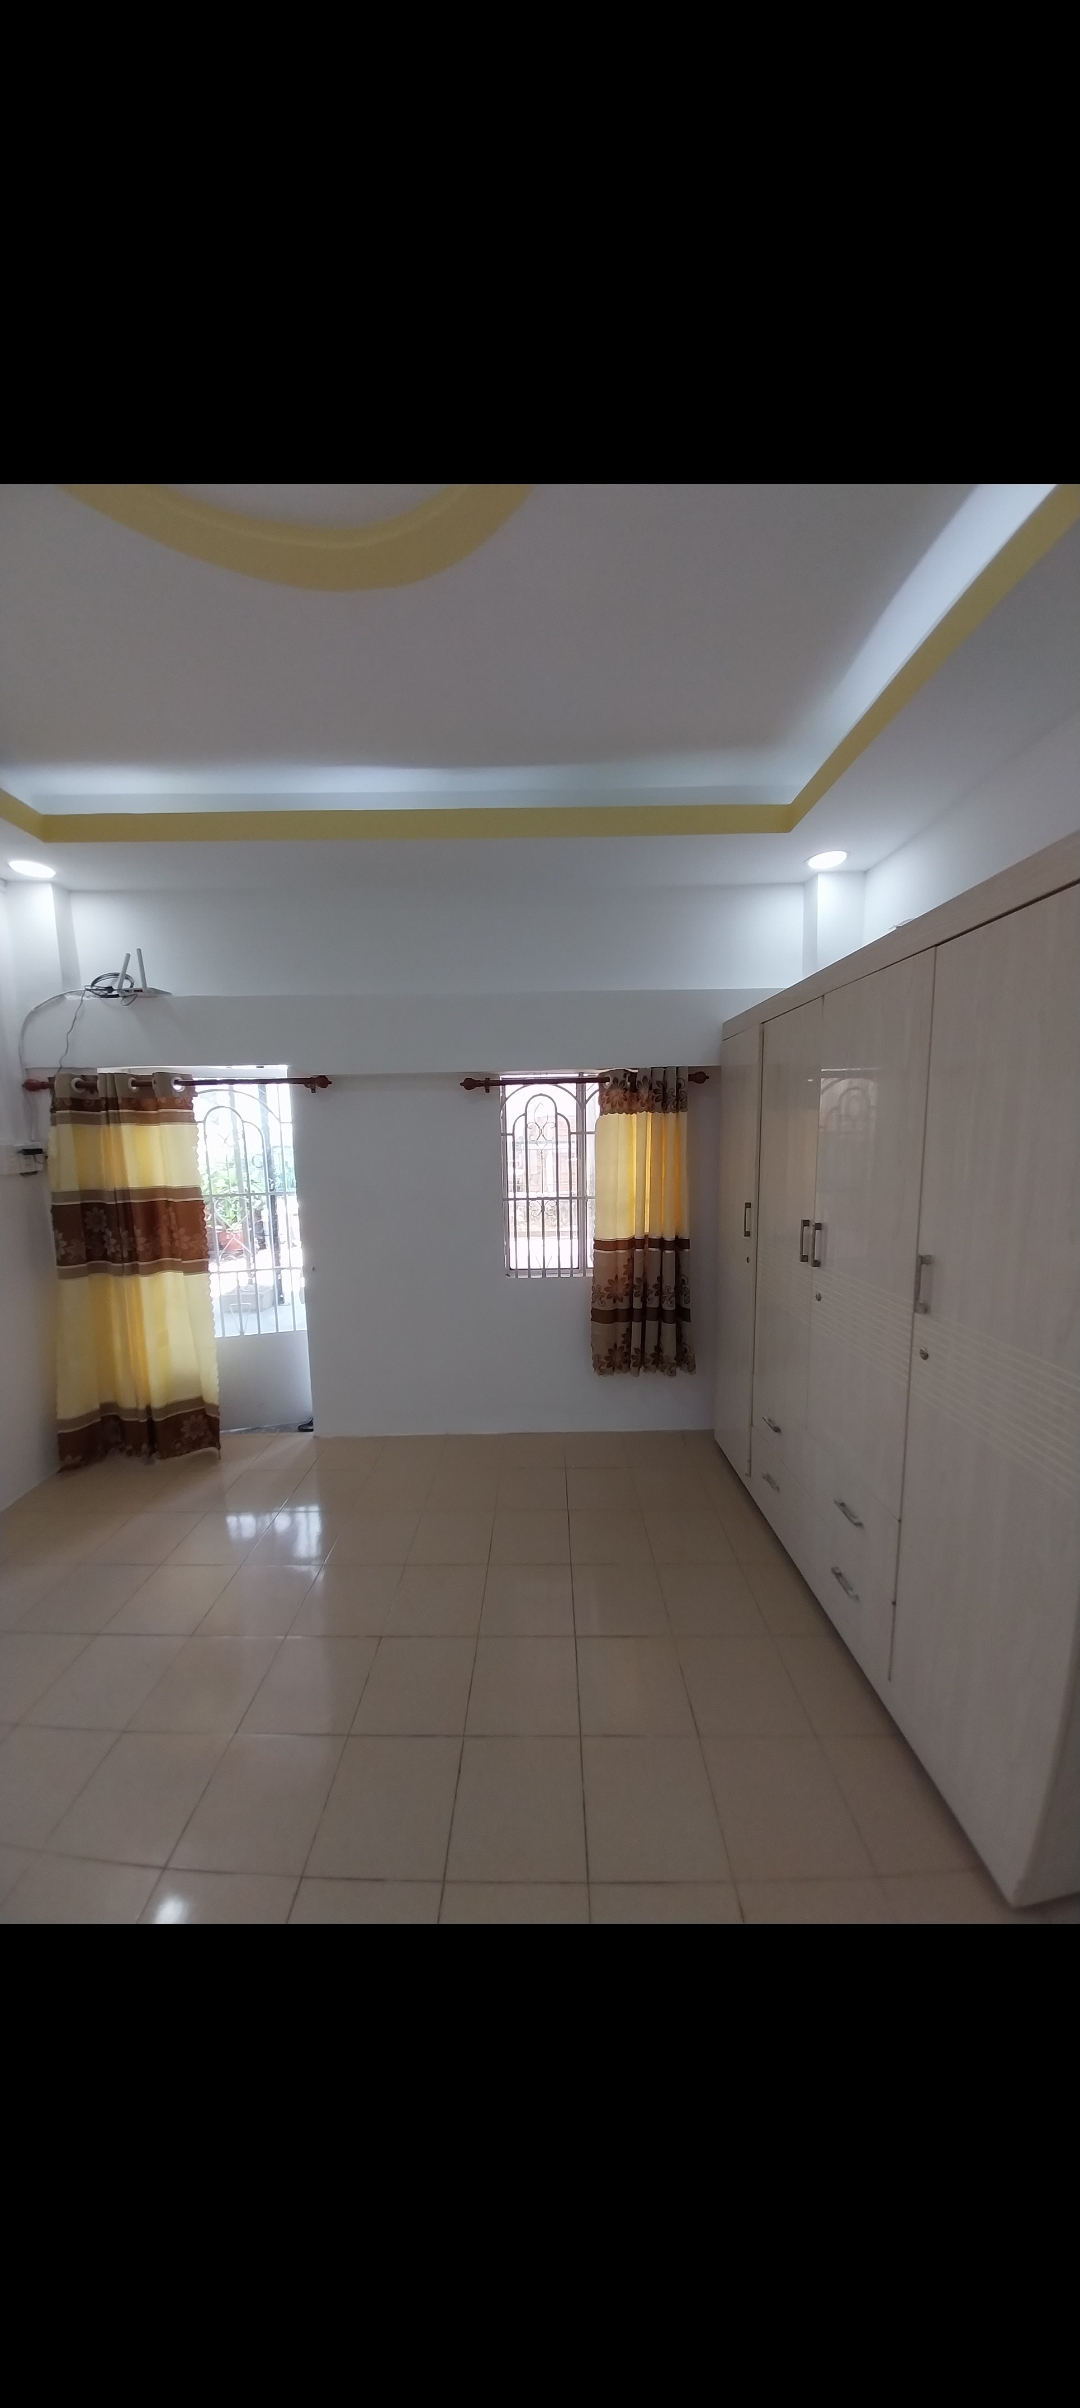 Căn hộ chung cư 38/9 Nguyễn Văn Trỗi Phú Nhuận 45m2, Full nội thất,đầy đủ tiện nghi.